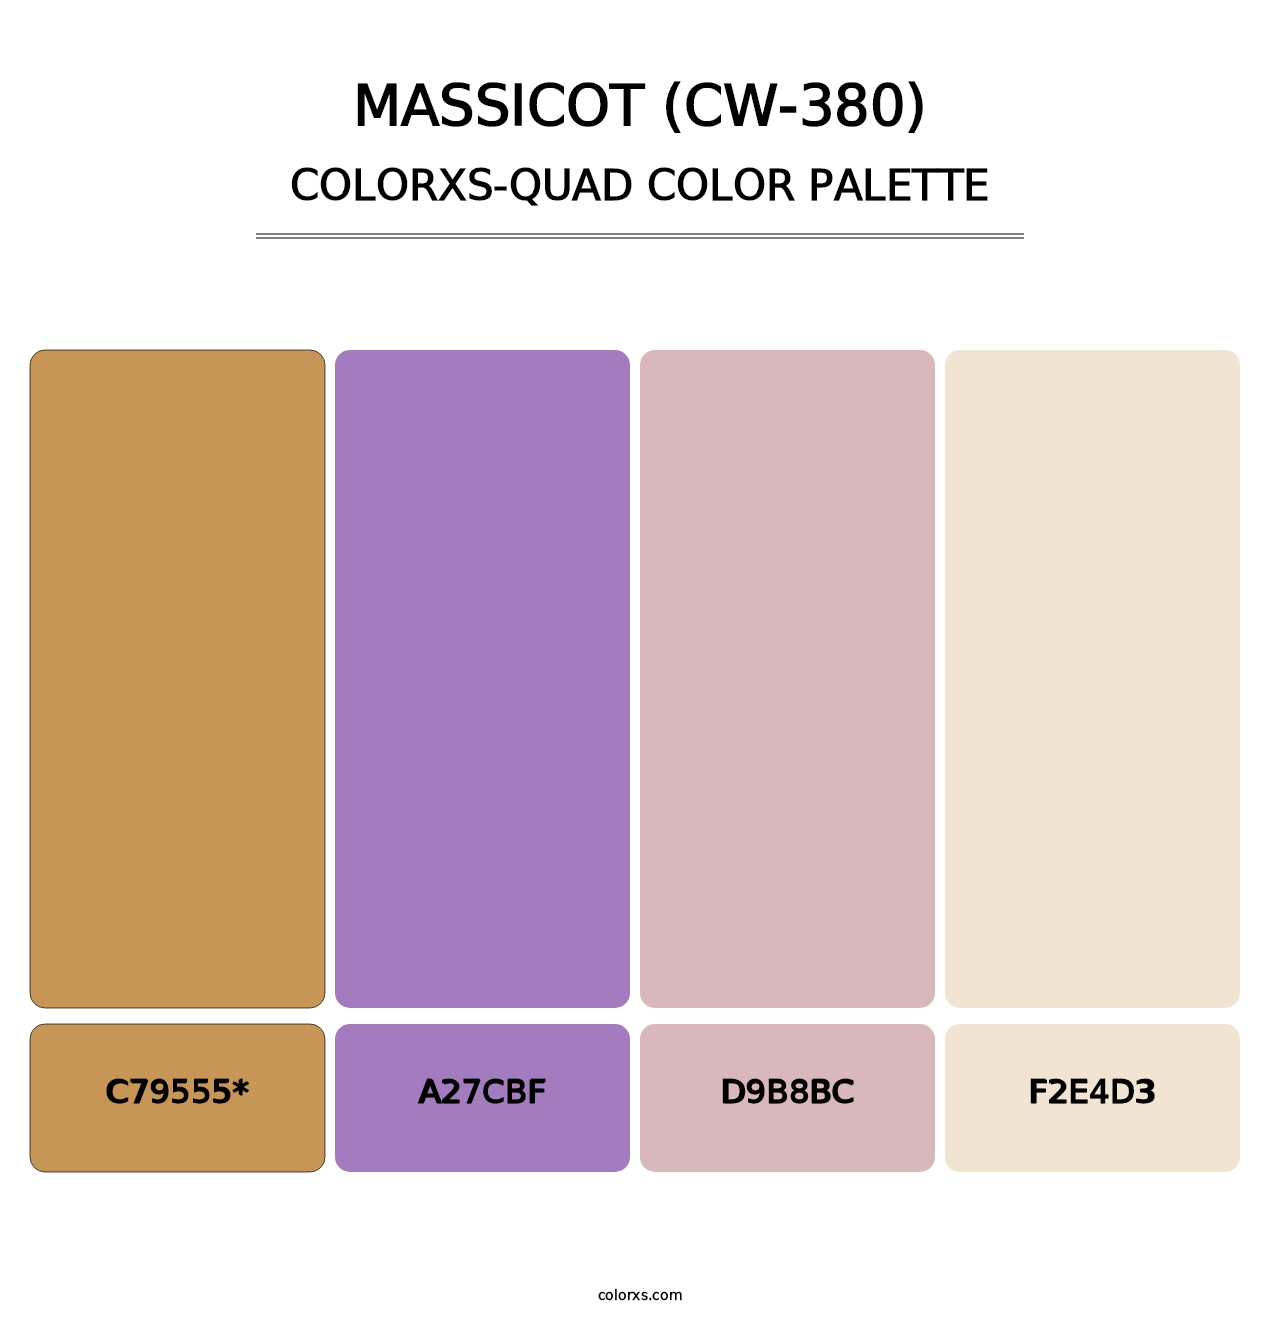 Massicot (CW-380) - Colorxs Quad Palette